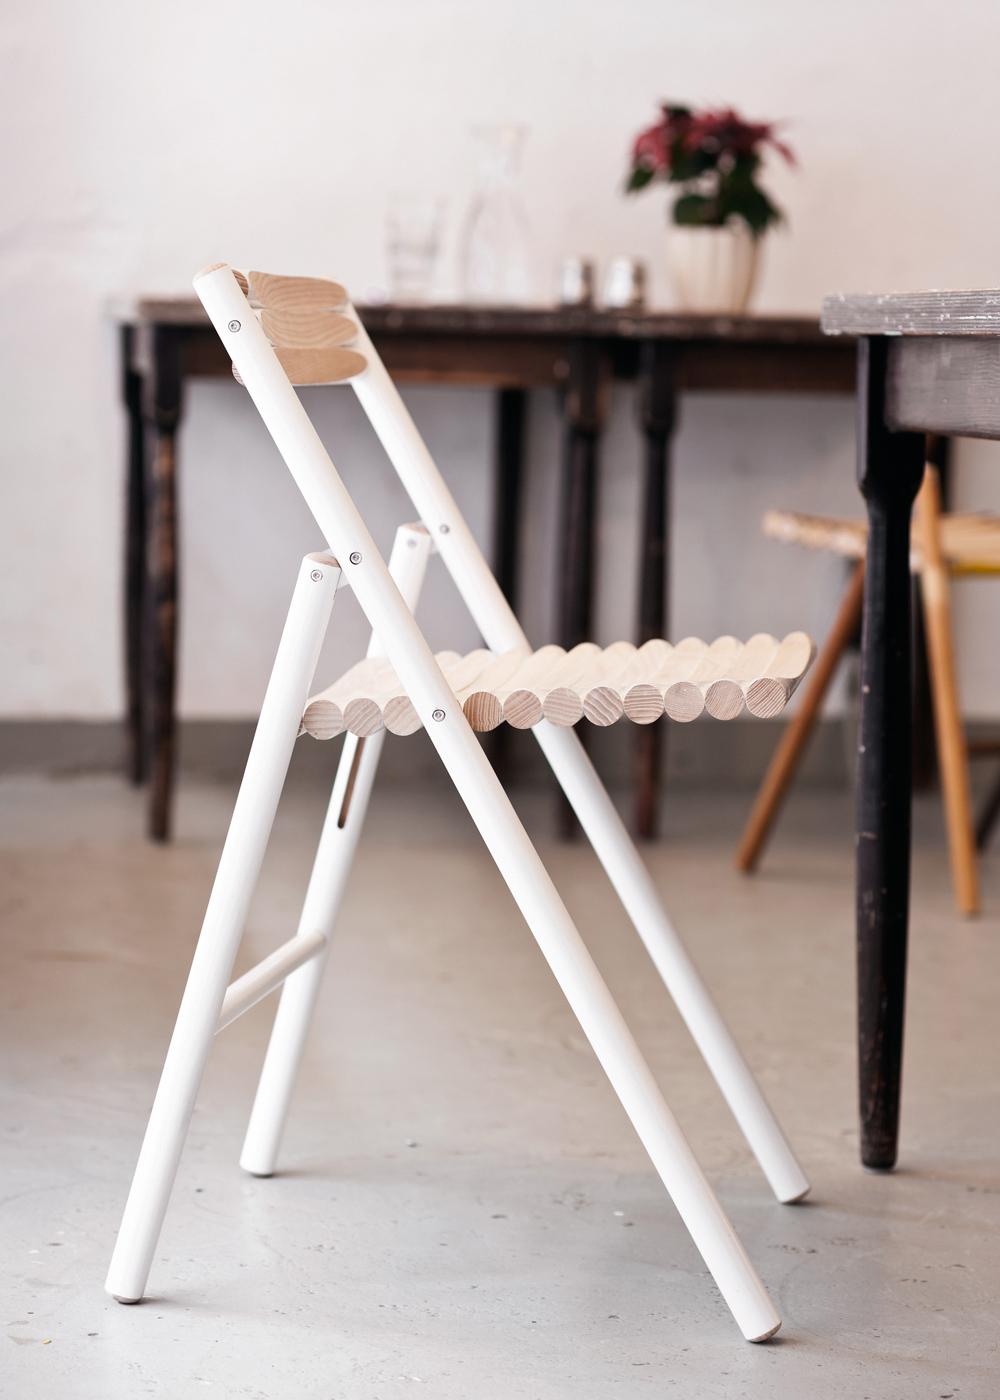 Der Name dieses Stuhls verrät bereits, woraus die Teile bestehen: Besenstiele. Ein Klappstuhl, in dem sich poetische Einfachheit und Raffinesse vereinen. Es gibt zwei Versionen: eine mit wiederverwendeten Griffen und eine mit neuen Griffen aus